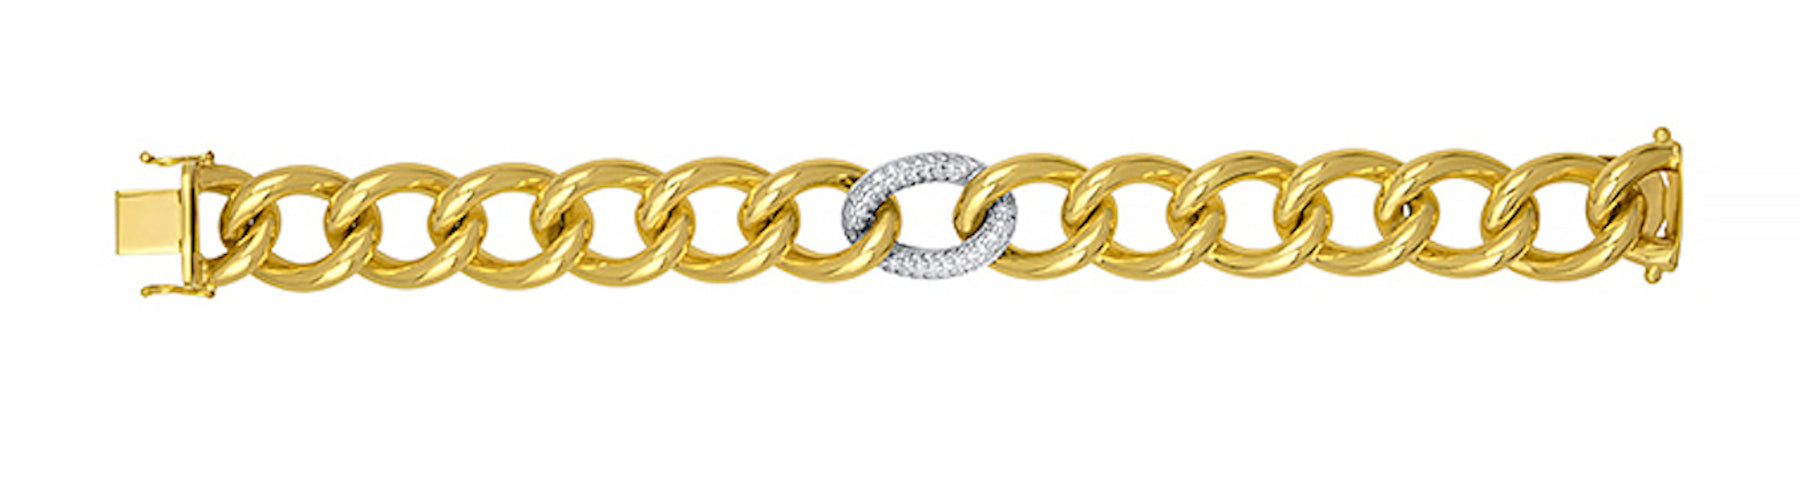 18K Gold Diamond Bracelet, SOLD